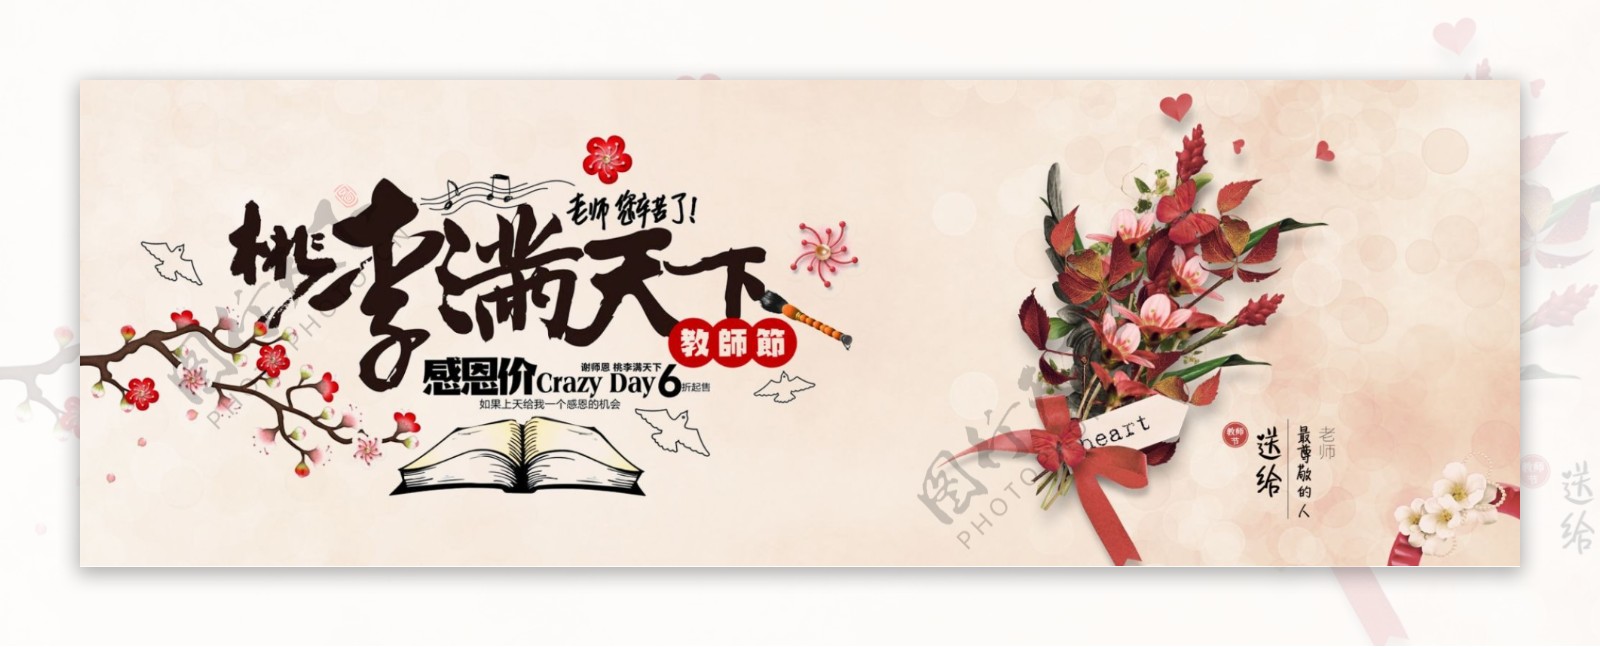 电商淘宝天猫教师节海报banner模板设计教师节海报